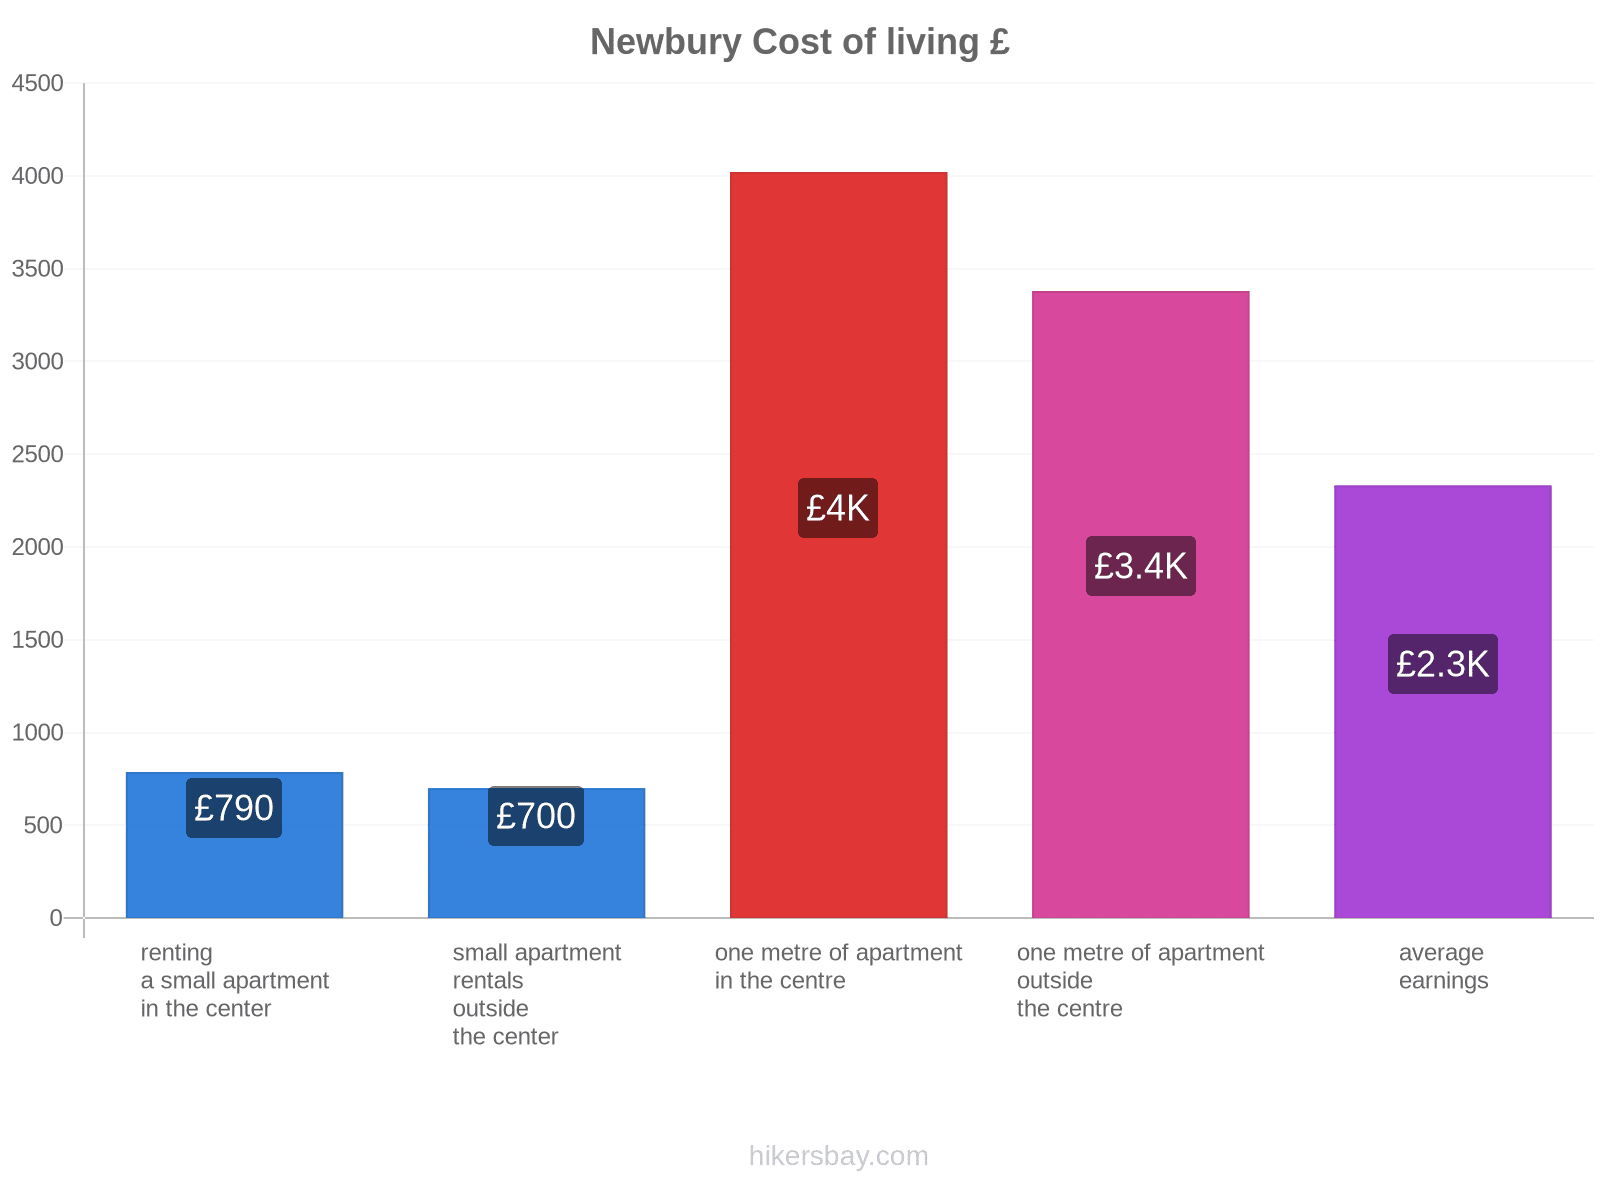 Newbury cost of living hikersbay.com